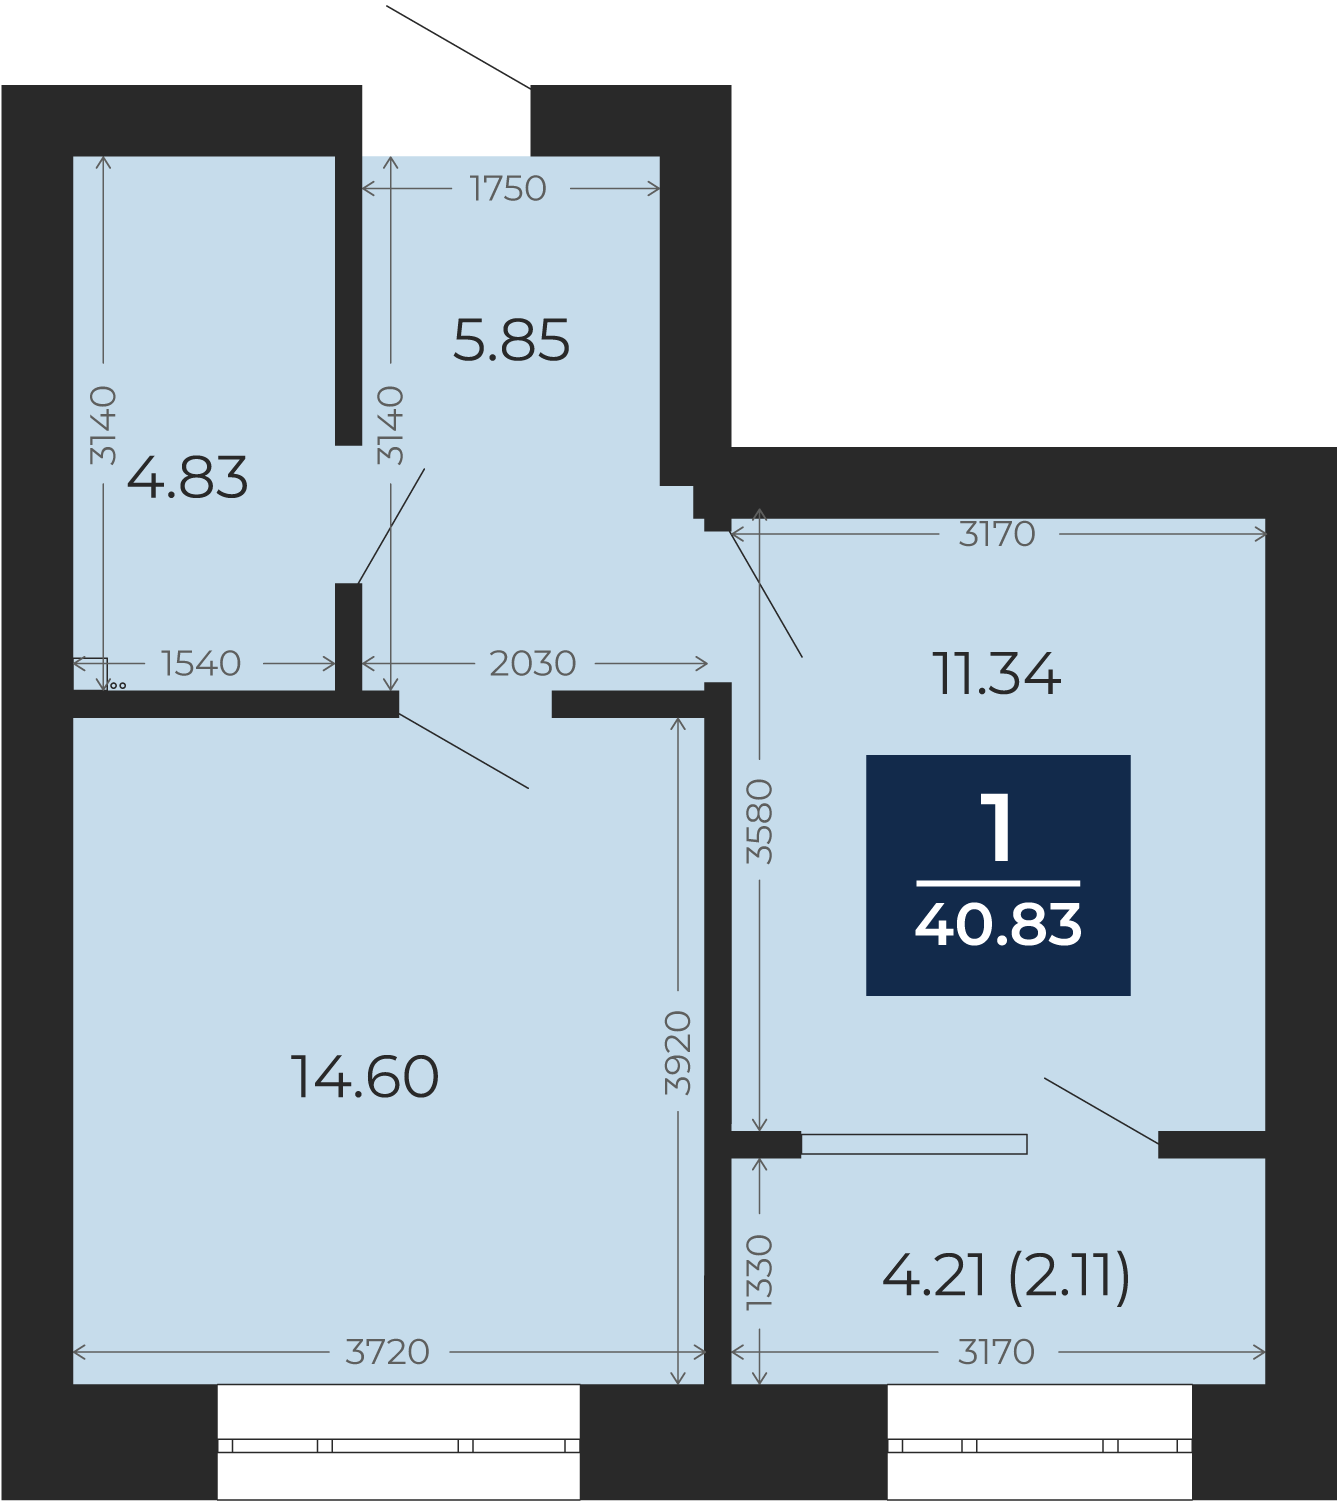 Квартира № 153, 1-комнатная, 40.83 кв. м, 6 этаж